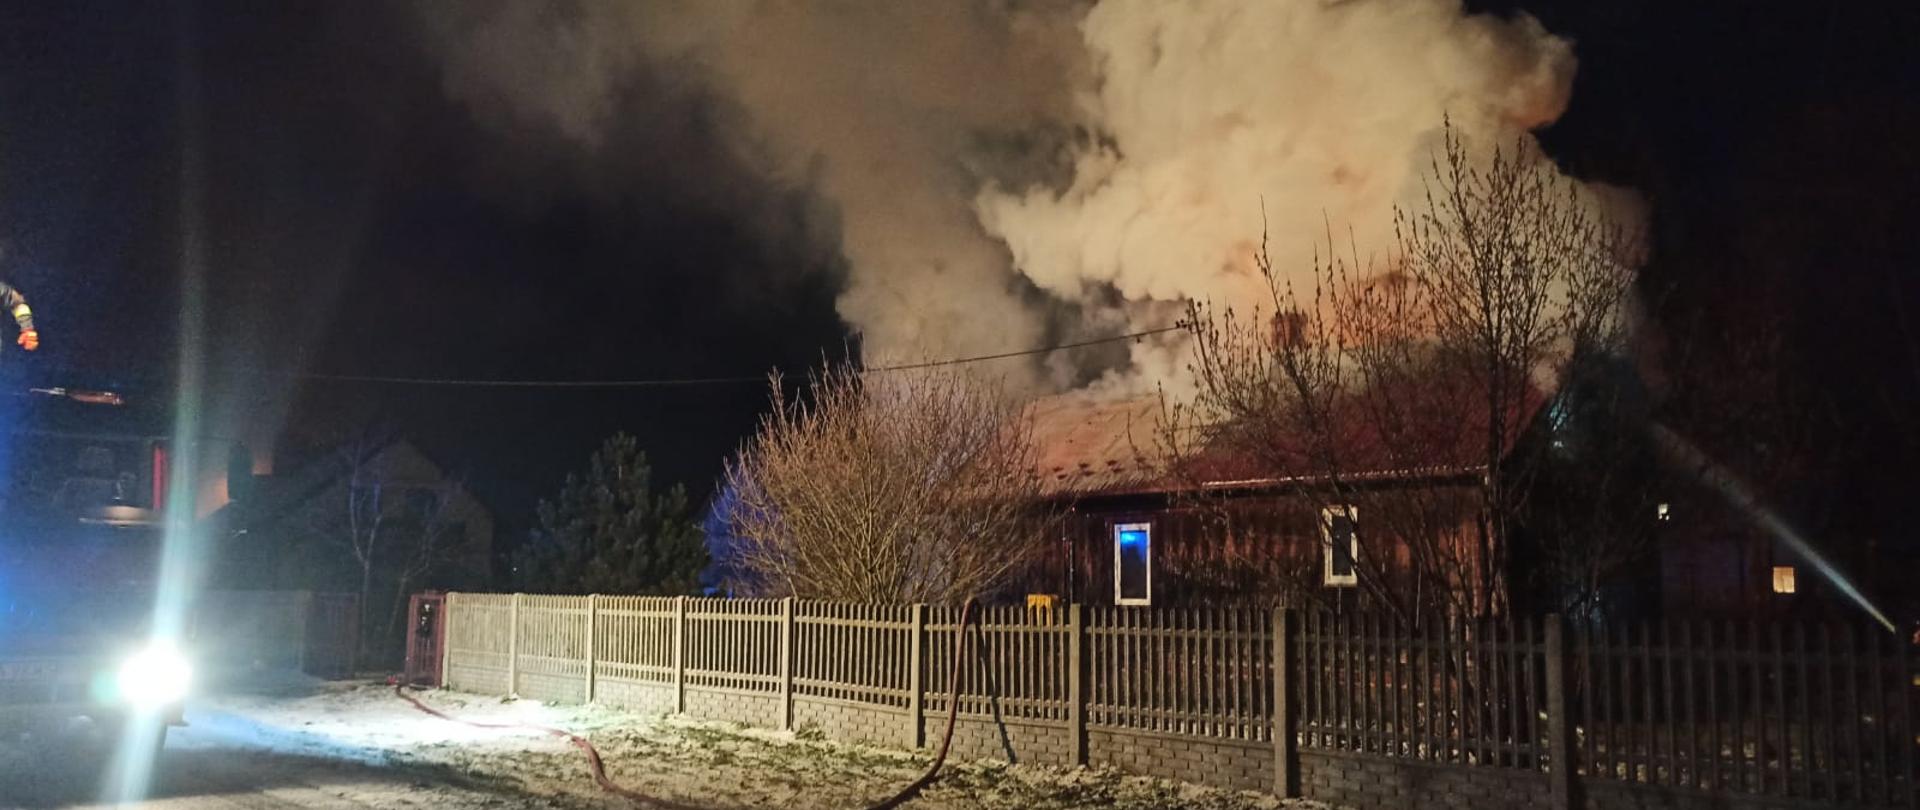 Na zdjęciu widać dom drewniany objęty pożarem i samochód pożarniczy stojący na drodze.